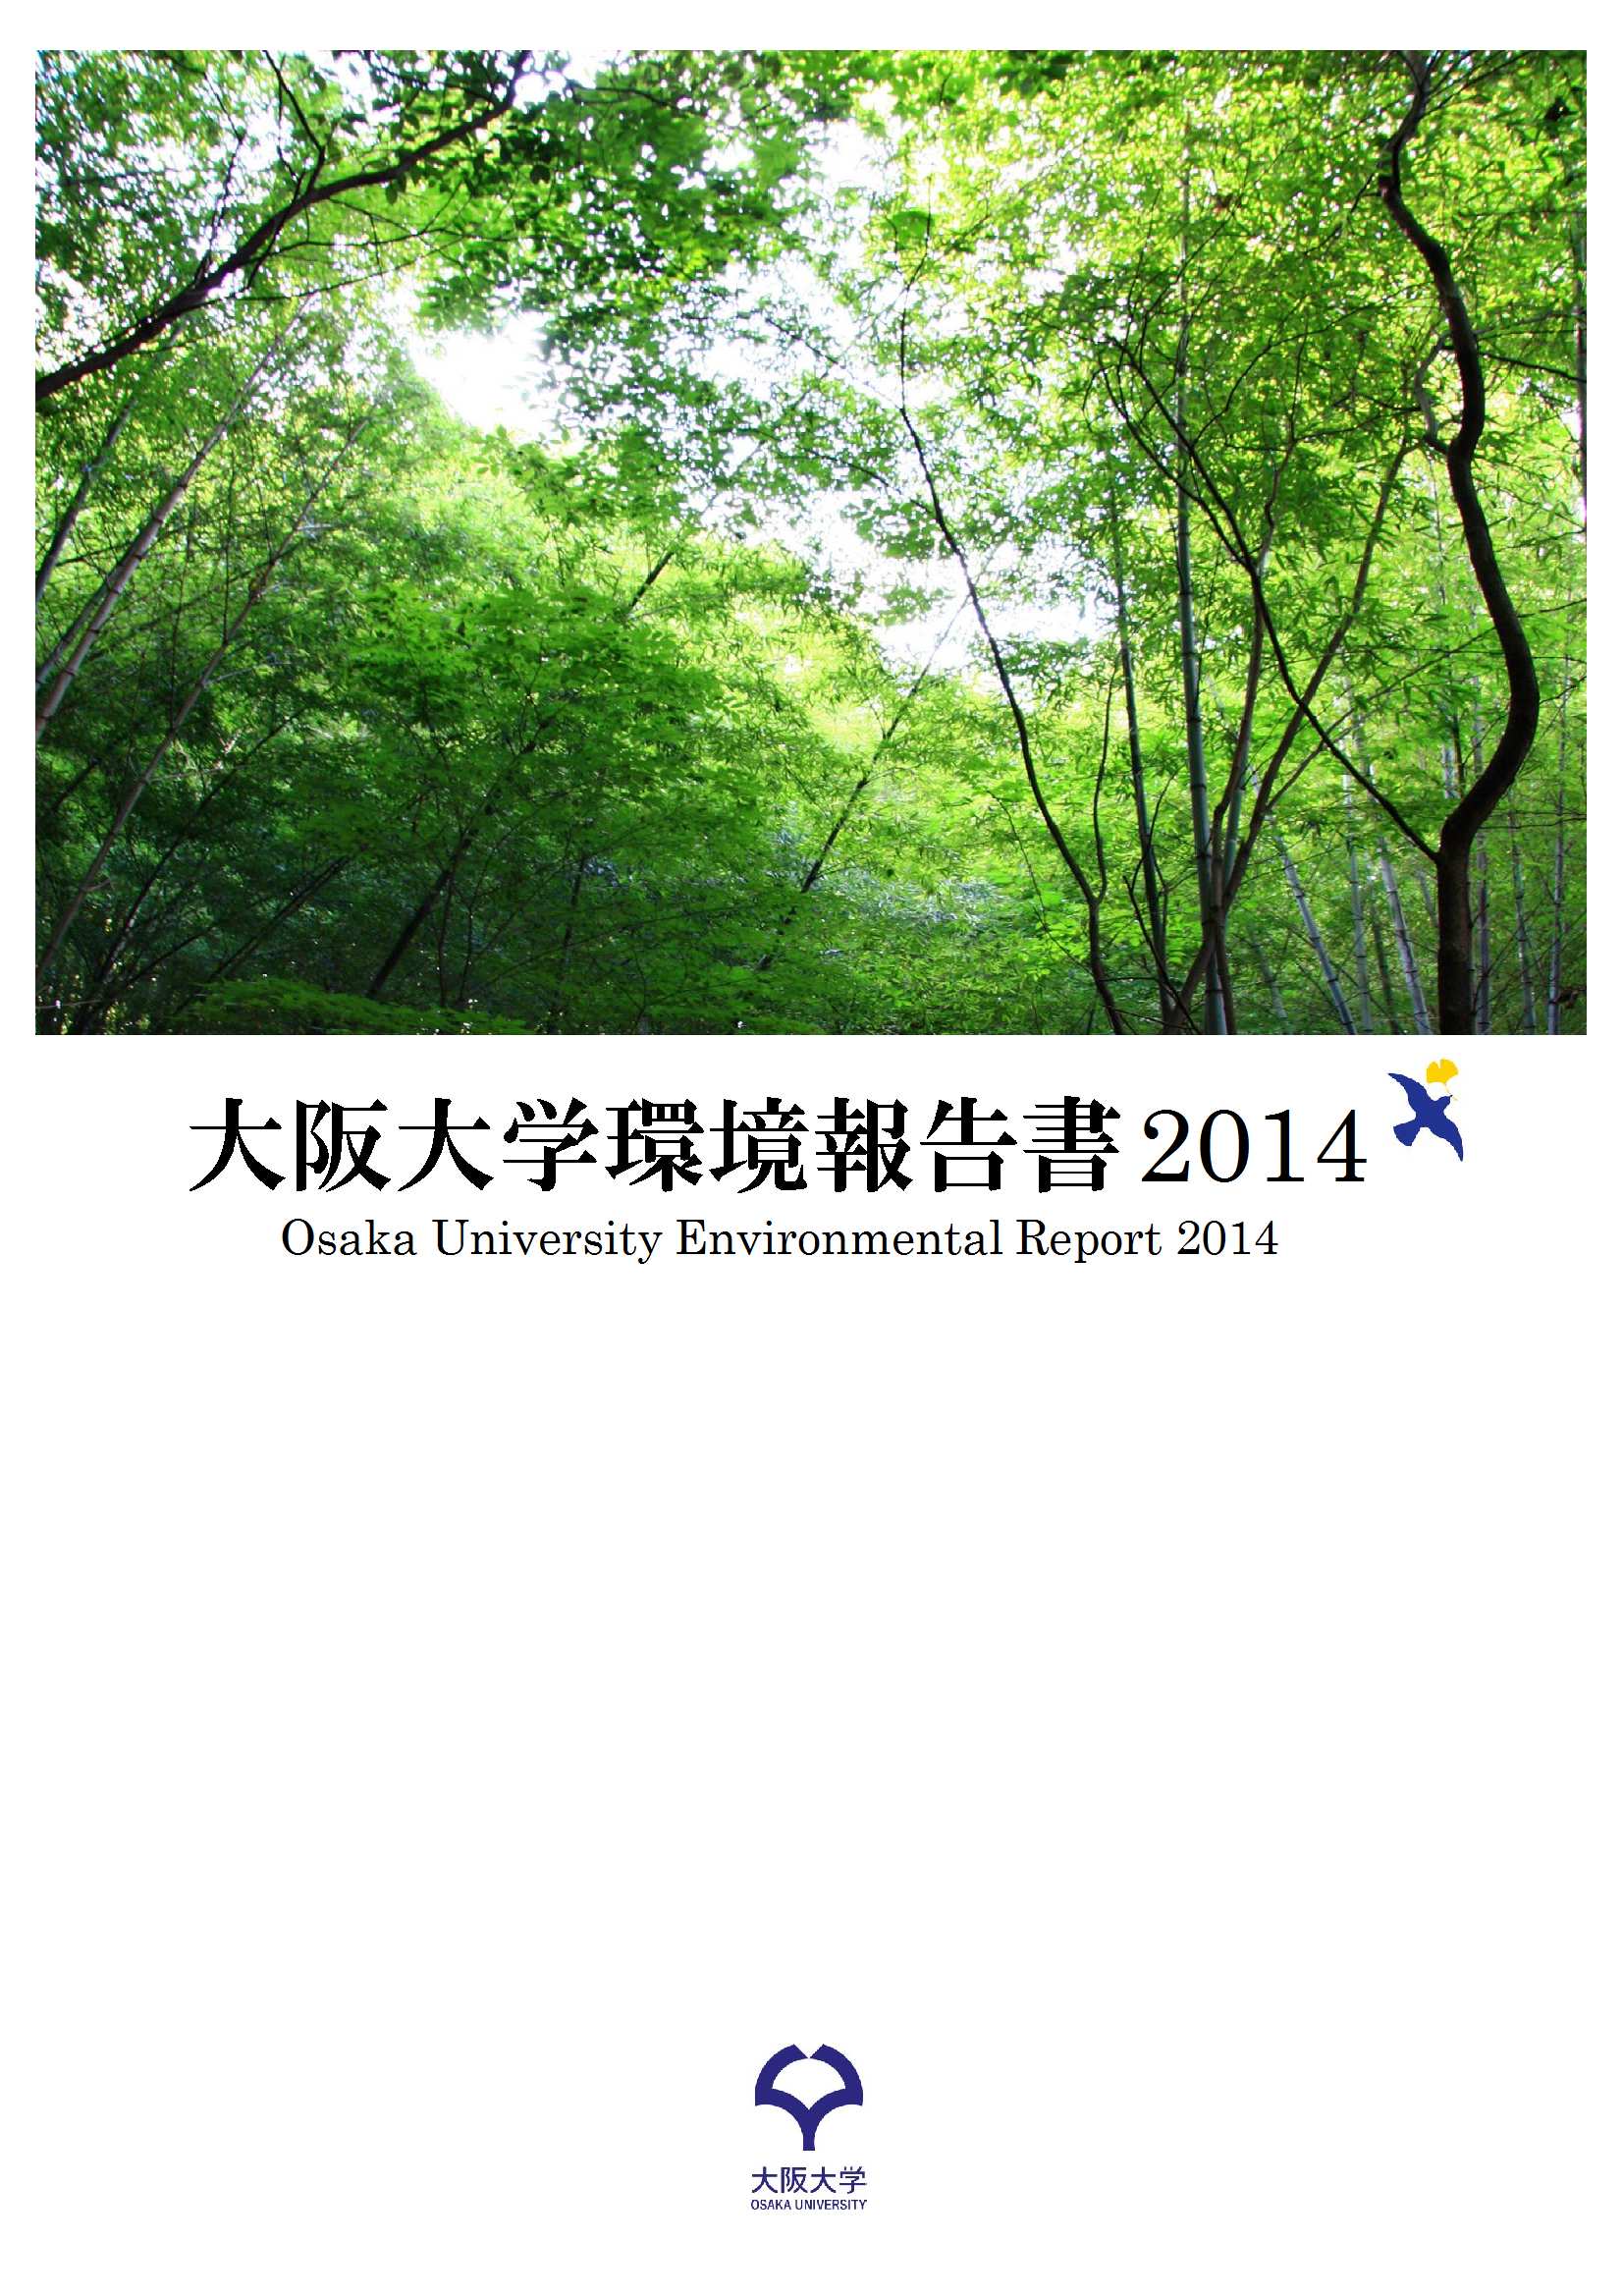 「環境報告書2014」の公表